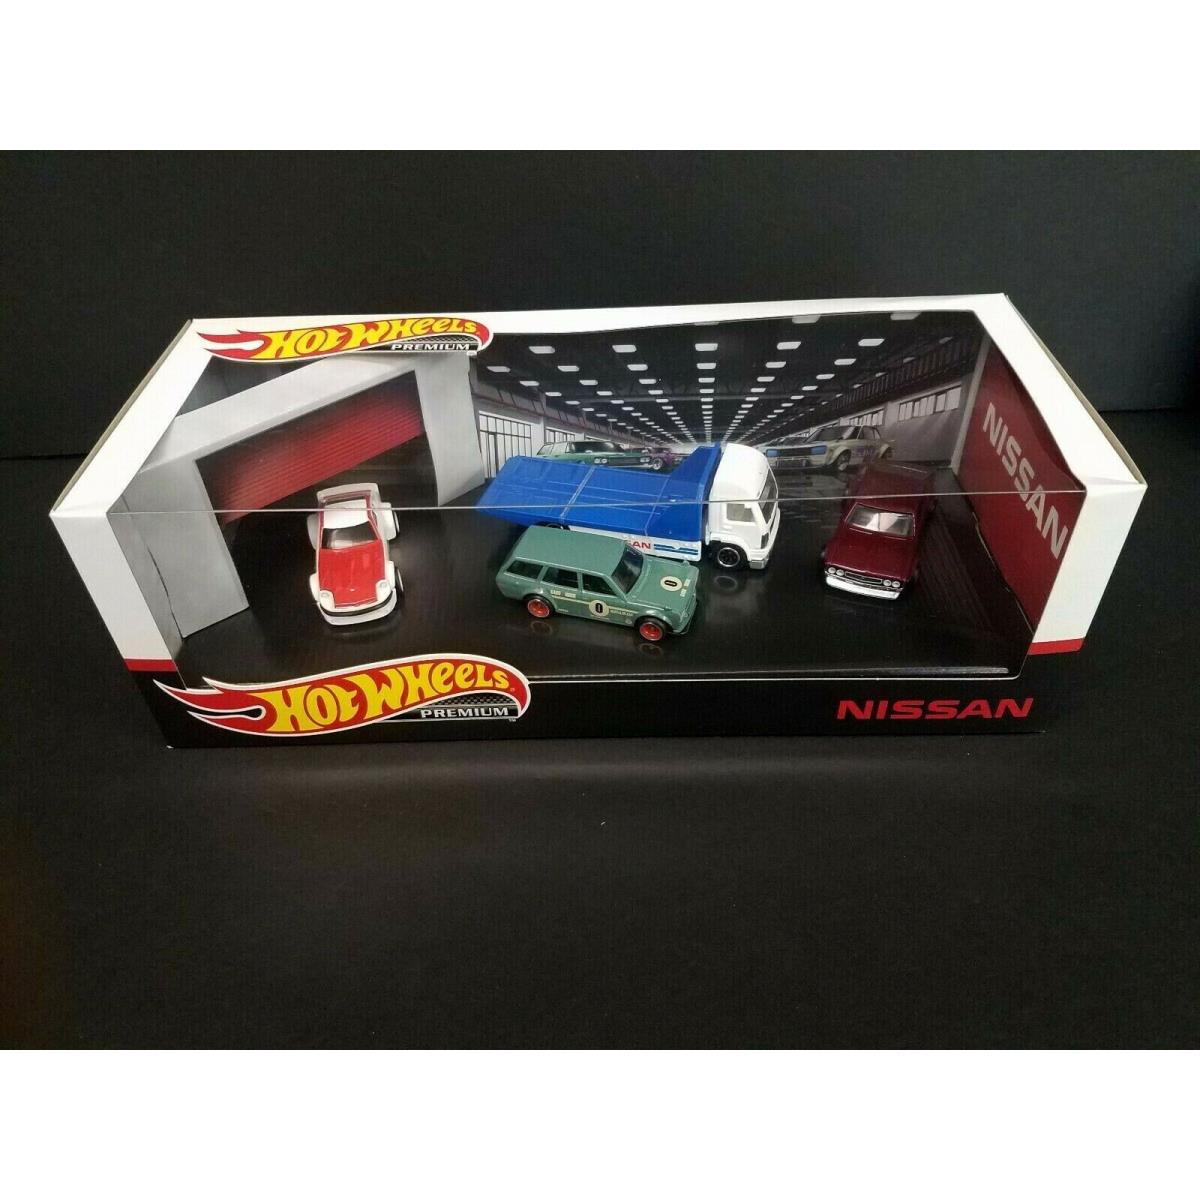 2020 Hot Wheels Premium Nissan 4 Piece Garage Diorama Box Set w/ 510 Bluebird